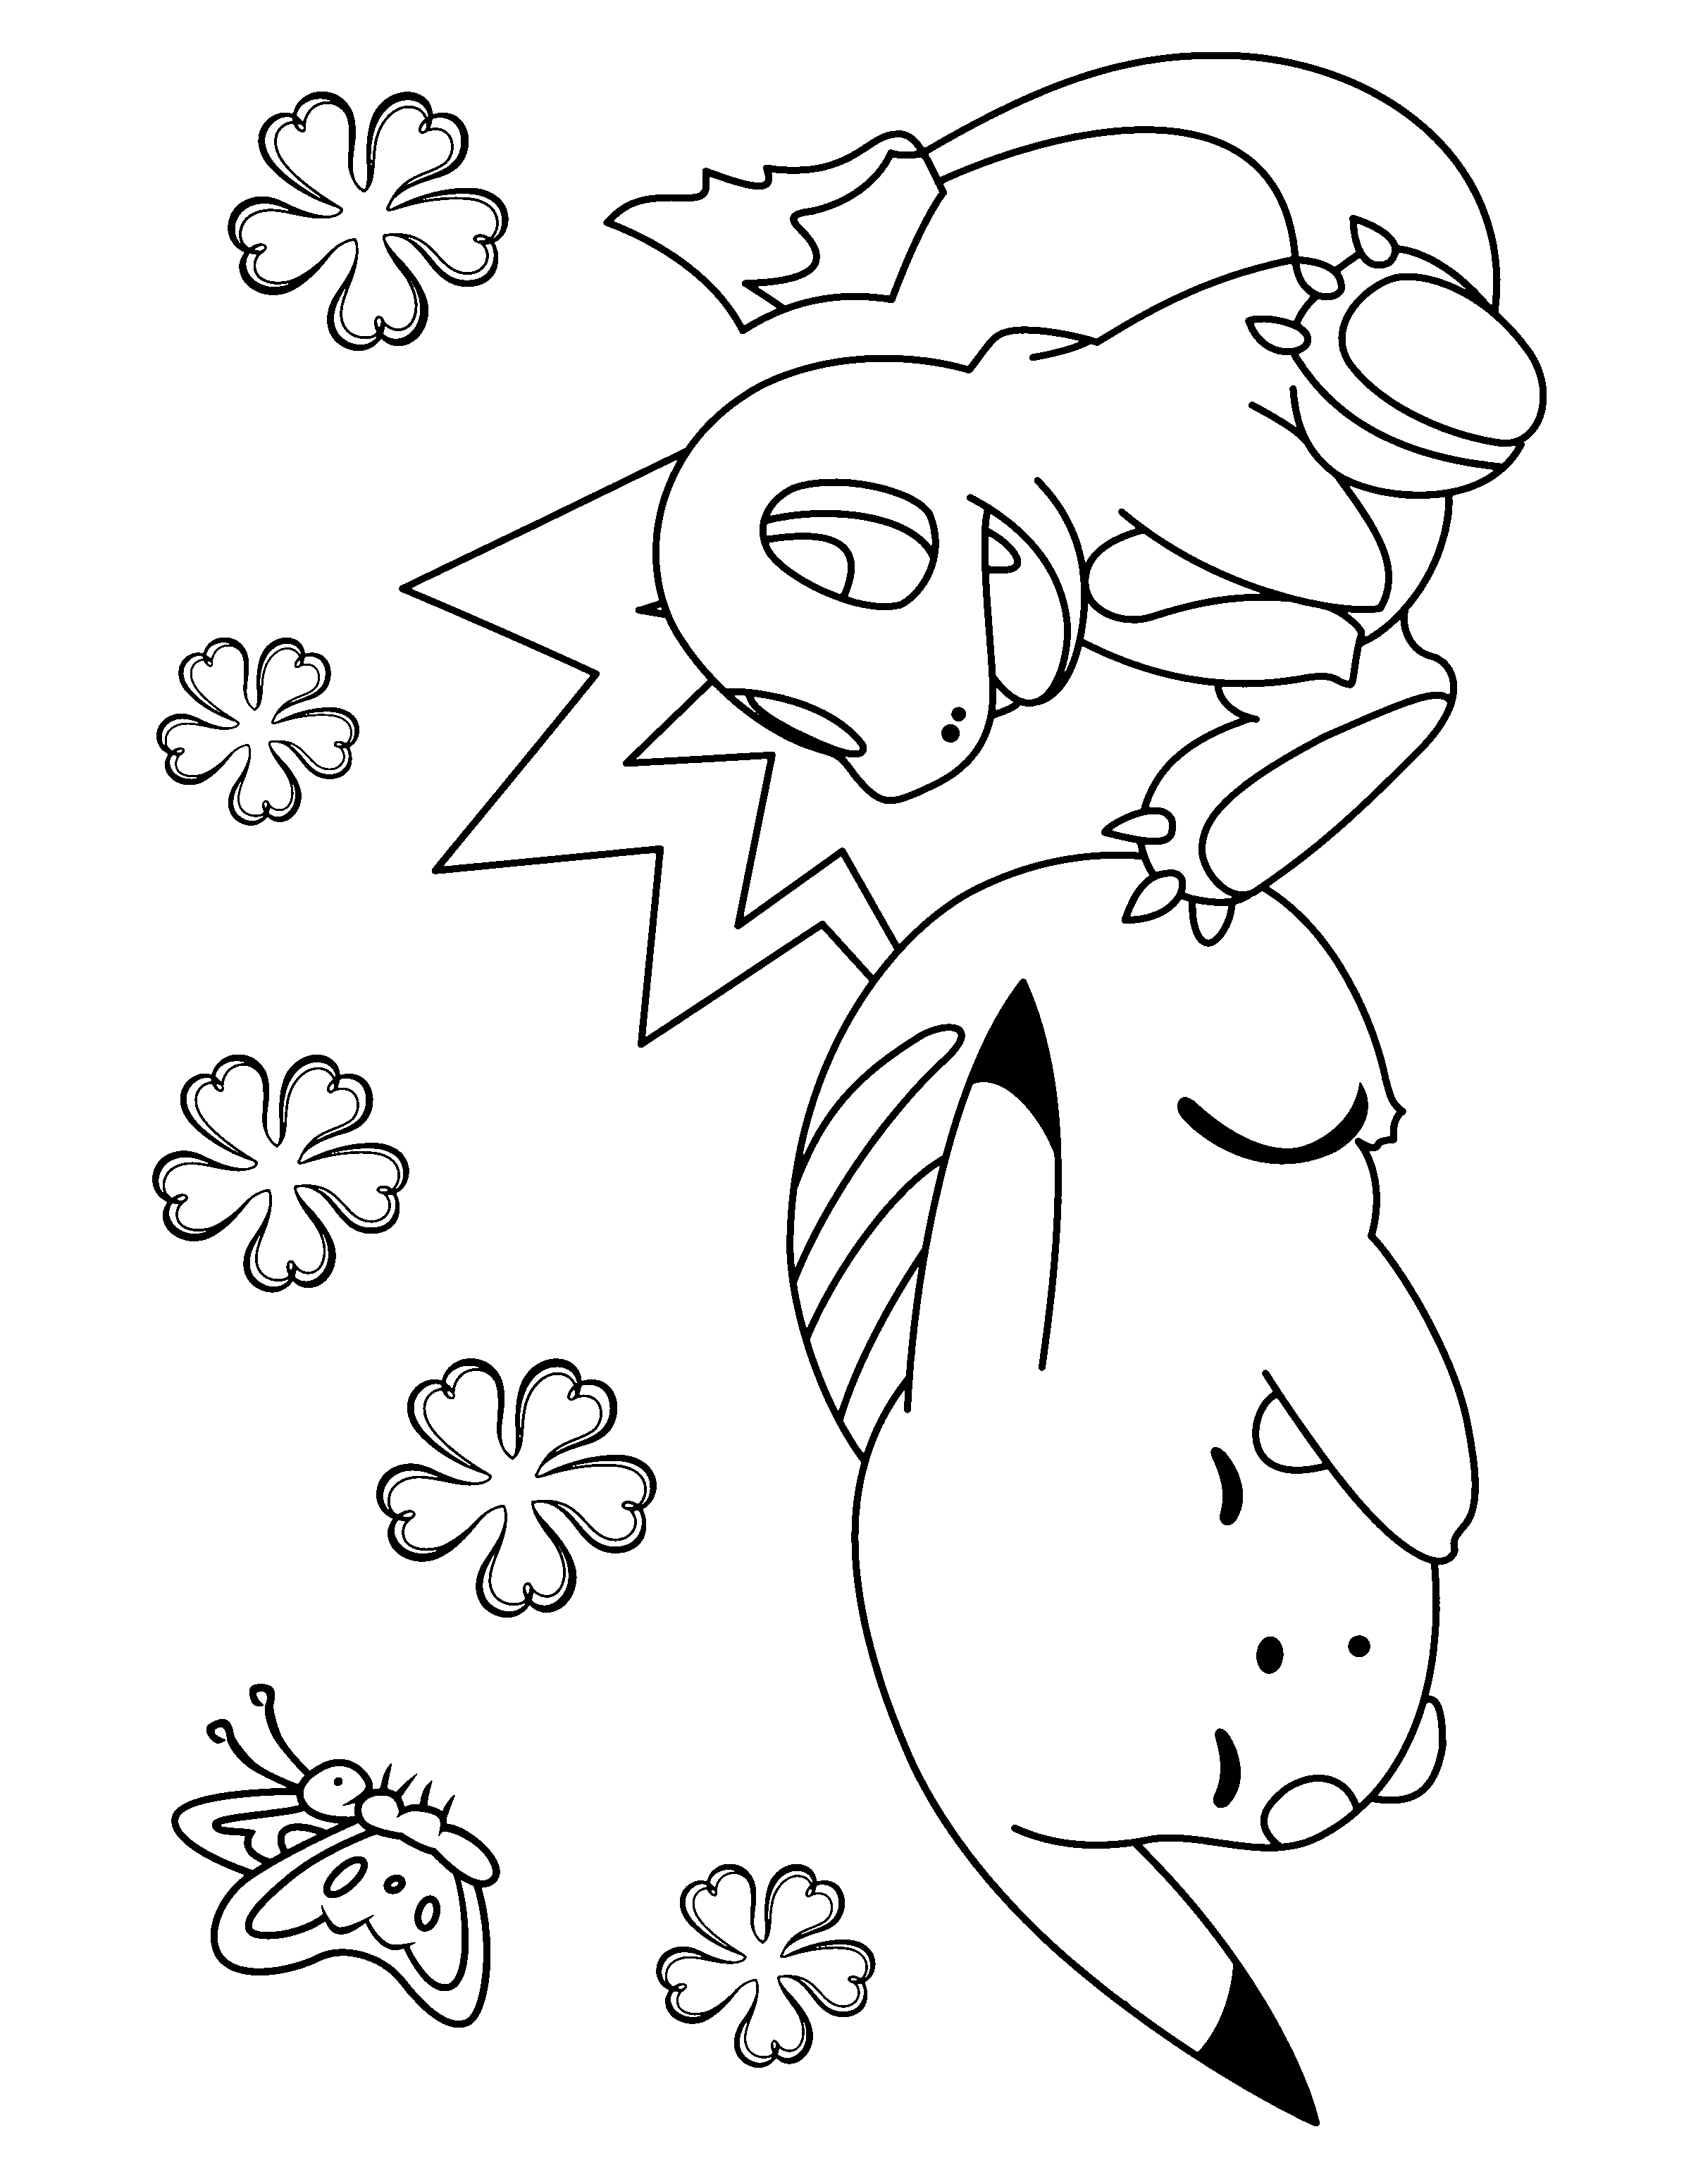 dibujo-para-colorear-pokemon-imagen-animada-0022